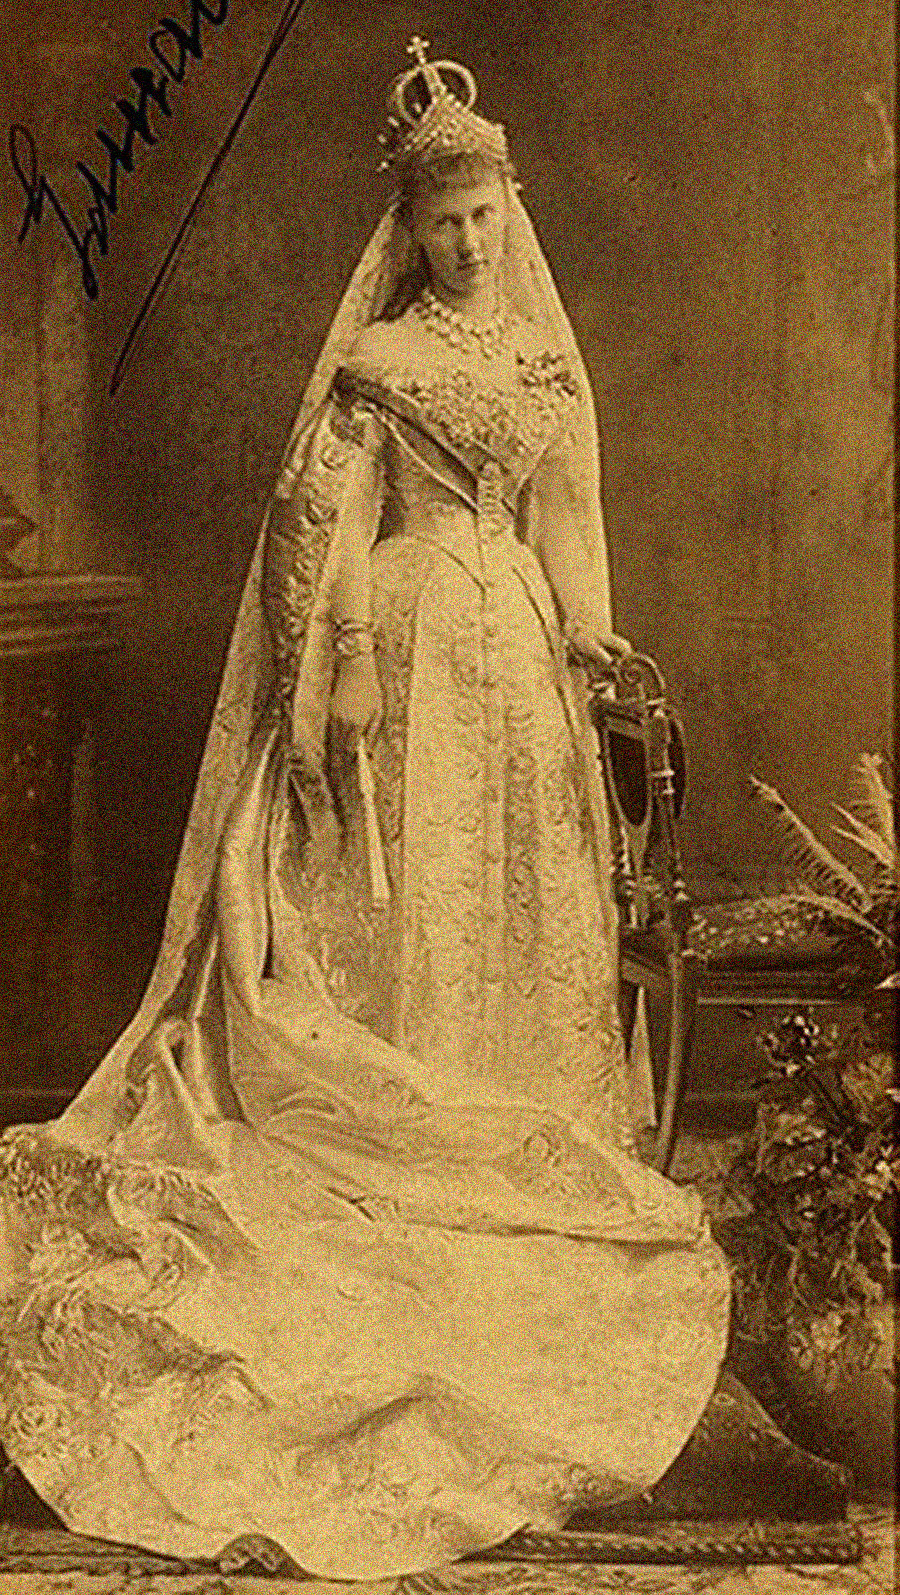 婚礼衣装を着た大公妃エリザヴェータ・マヴリキエヴナ 。戴冠式で、花嫁は婚礼用の王冠をつけ、その上にダイアモンドの頭飾りをつけた。